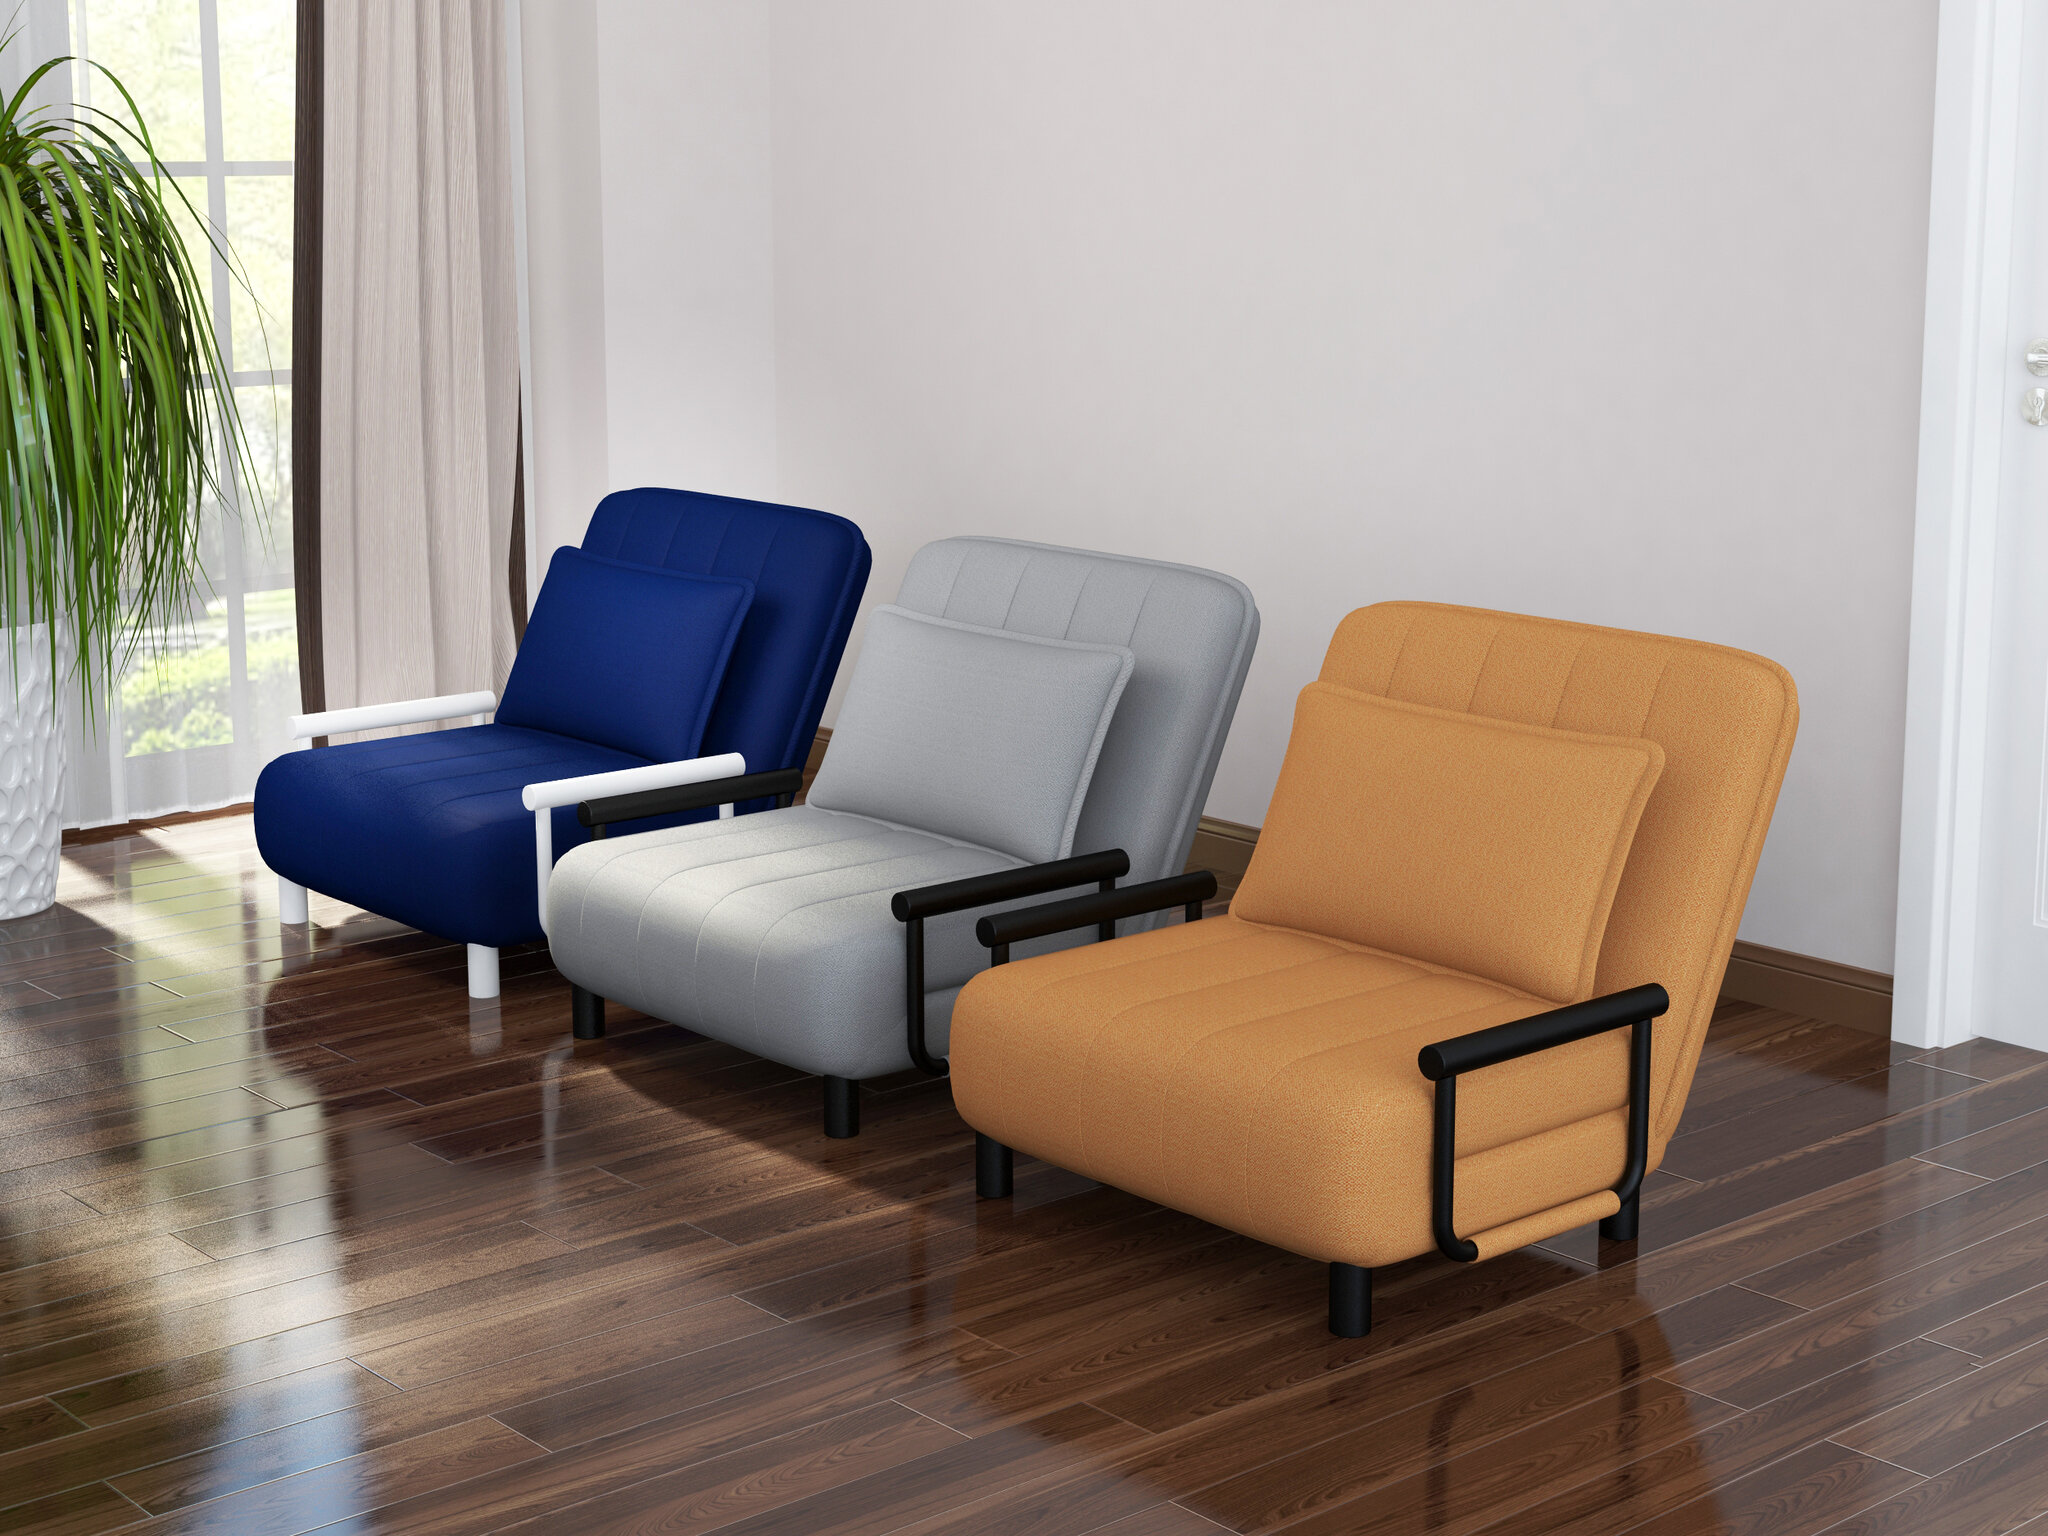 Кресла-трансформеры: раскладушка с матрасом, варианты для малогабаритной квартиры, которые могут принимать несколько положений